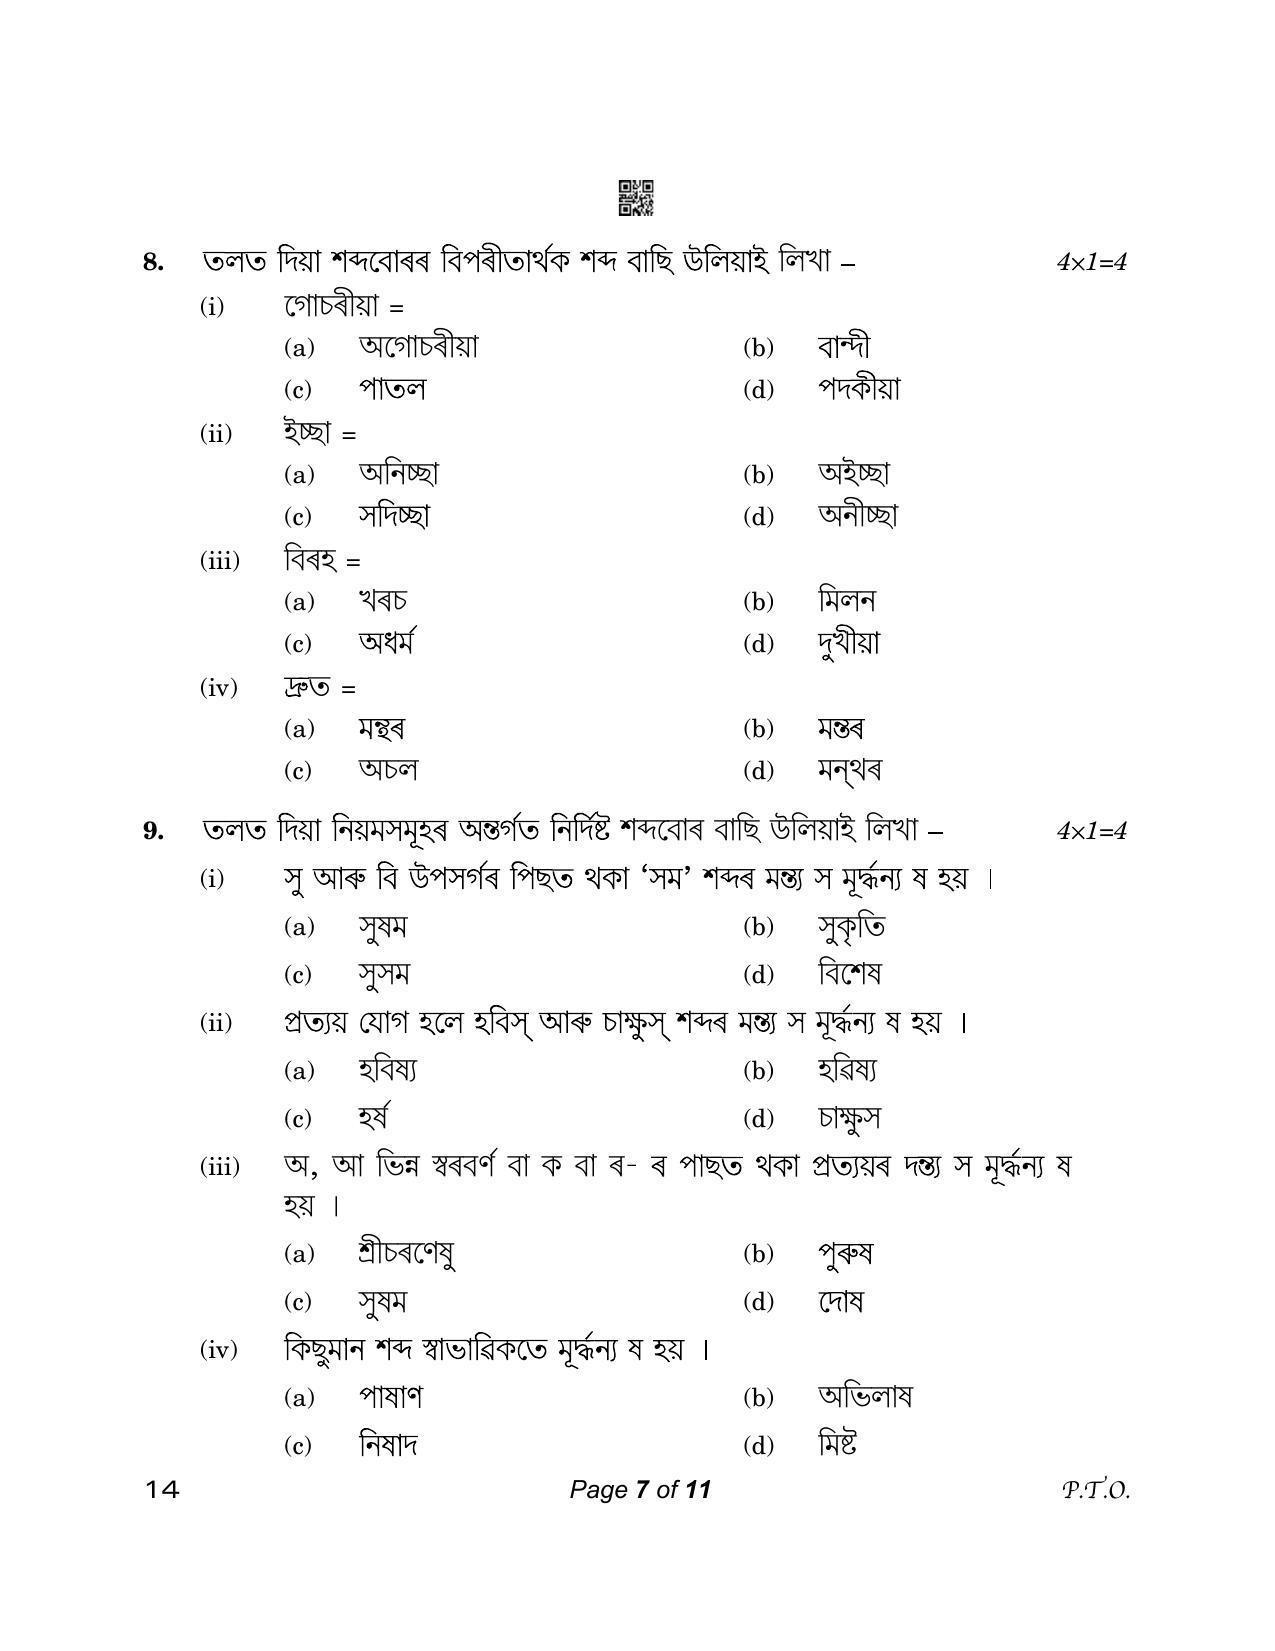 CBSE Class 12 14_Assamese 2023 Question Paper - Page 7